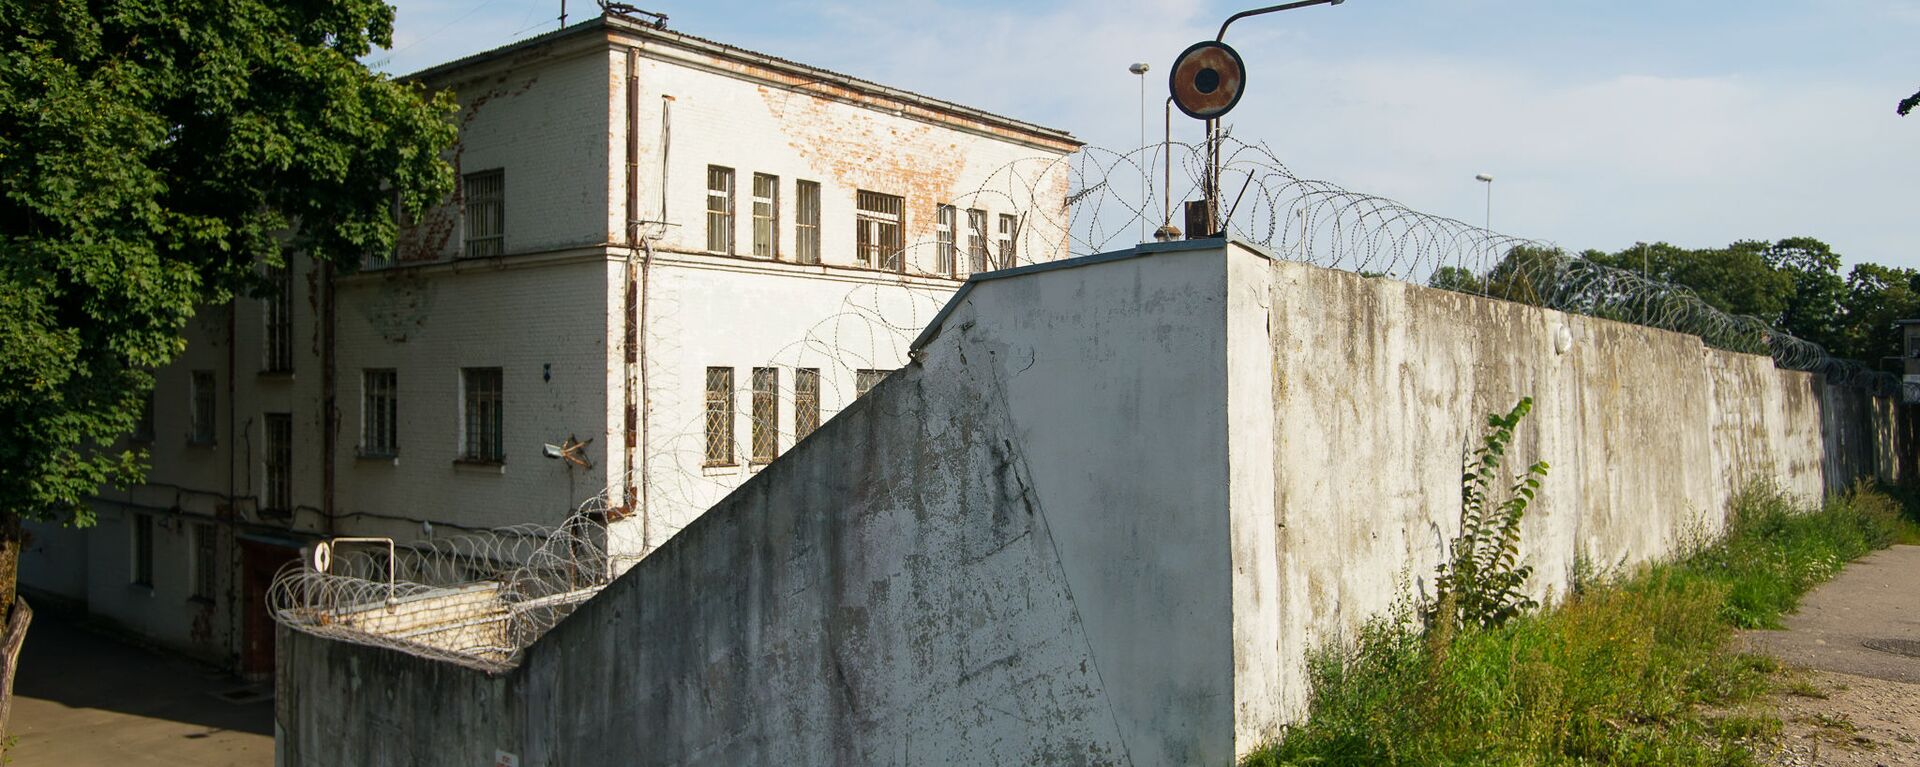 Даугавпилсская тюрьма, в просторечии - Белый лебедь - Sputnik Латвия, 1920, 17.03.2021